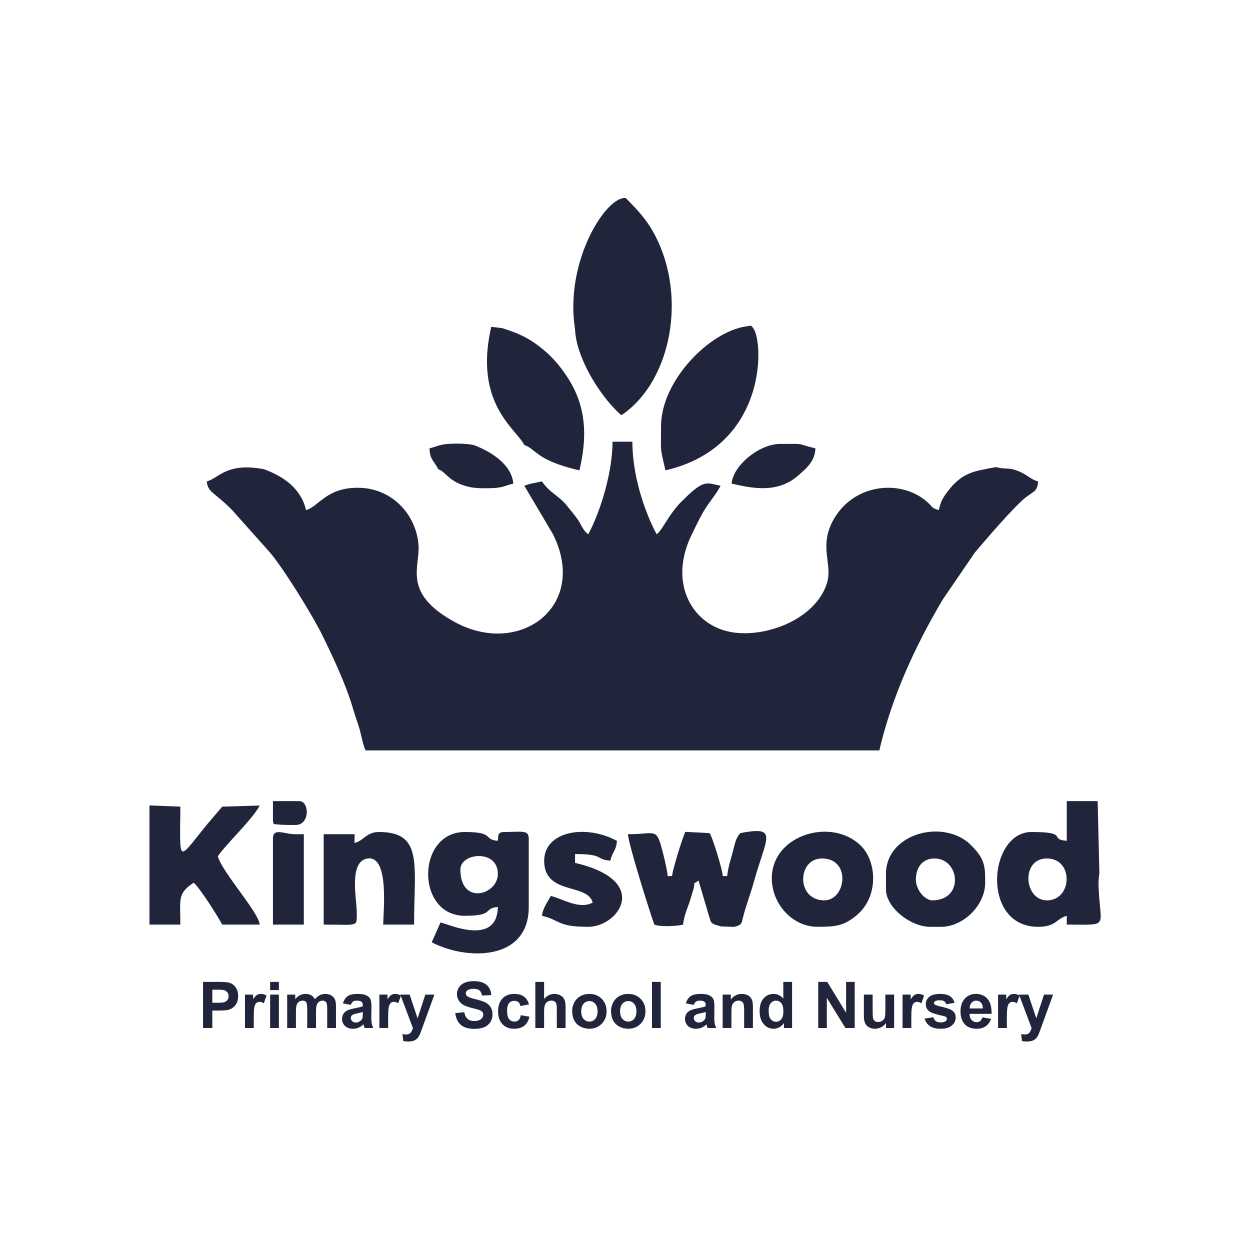 kingswood logo.jpg